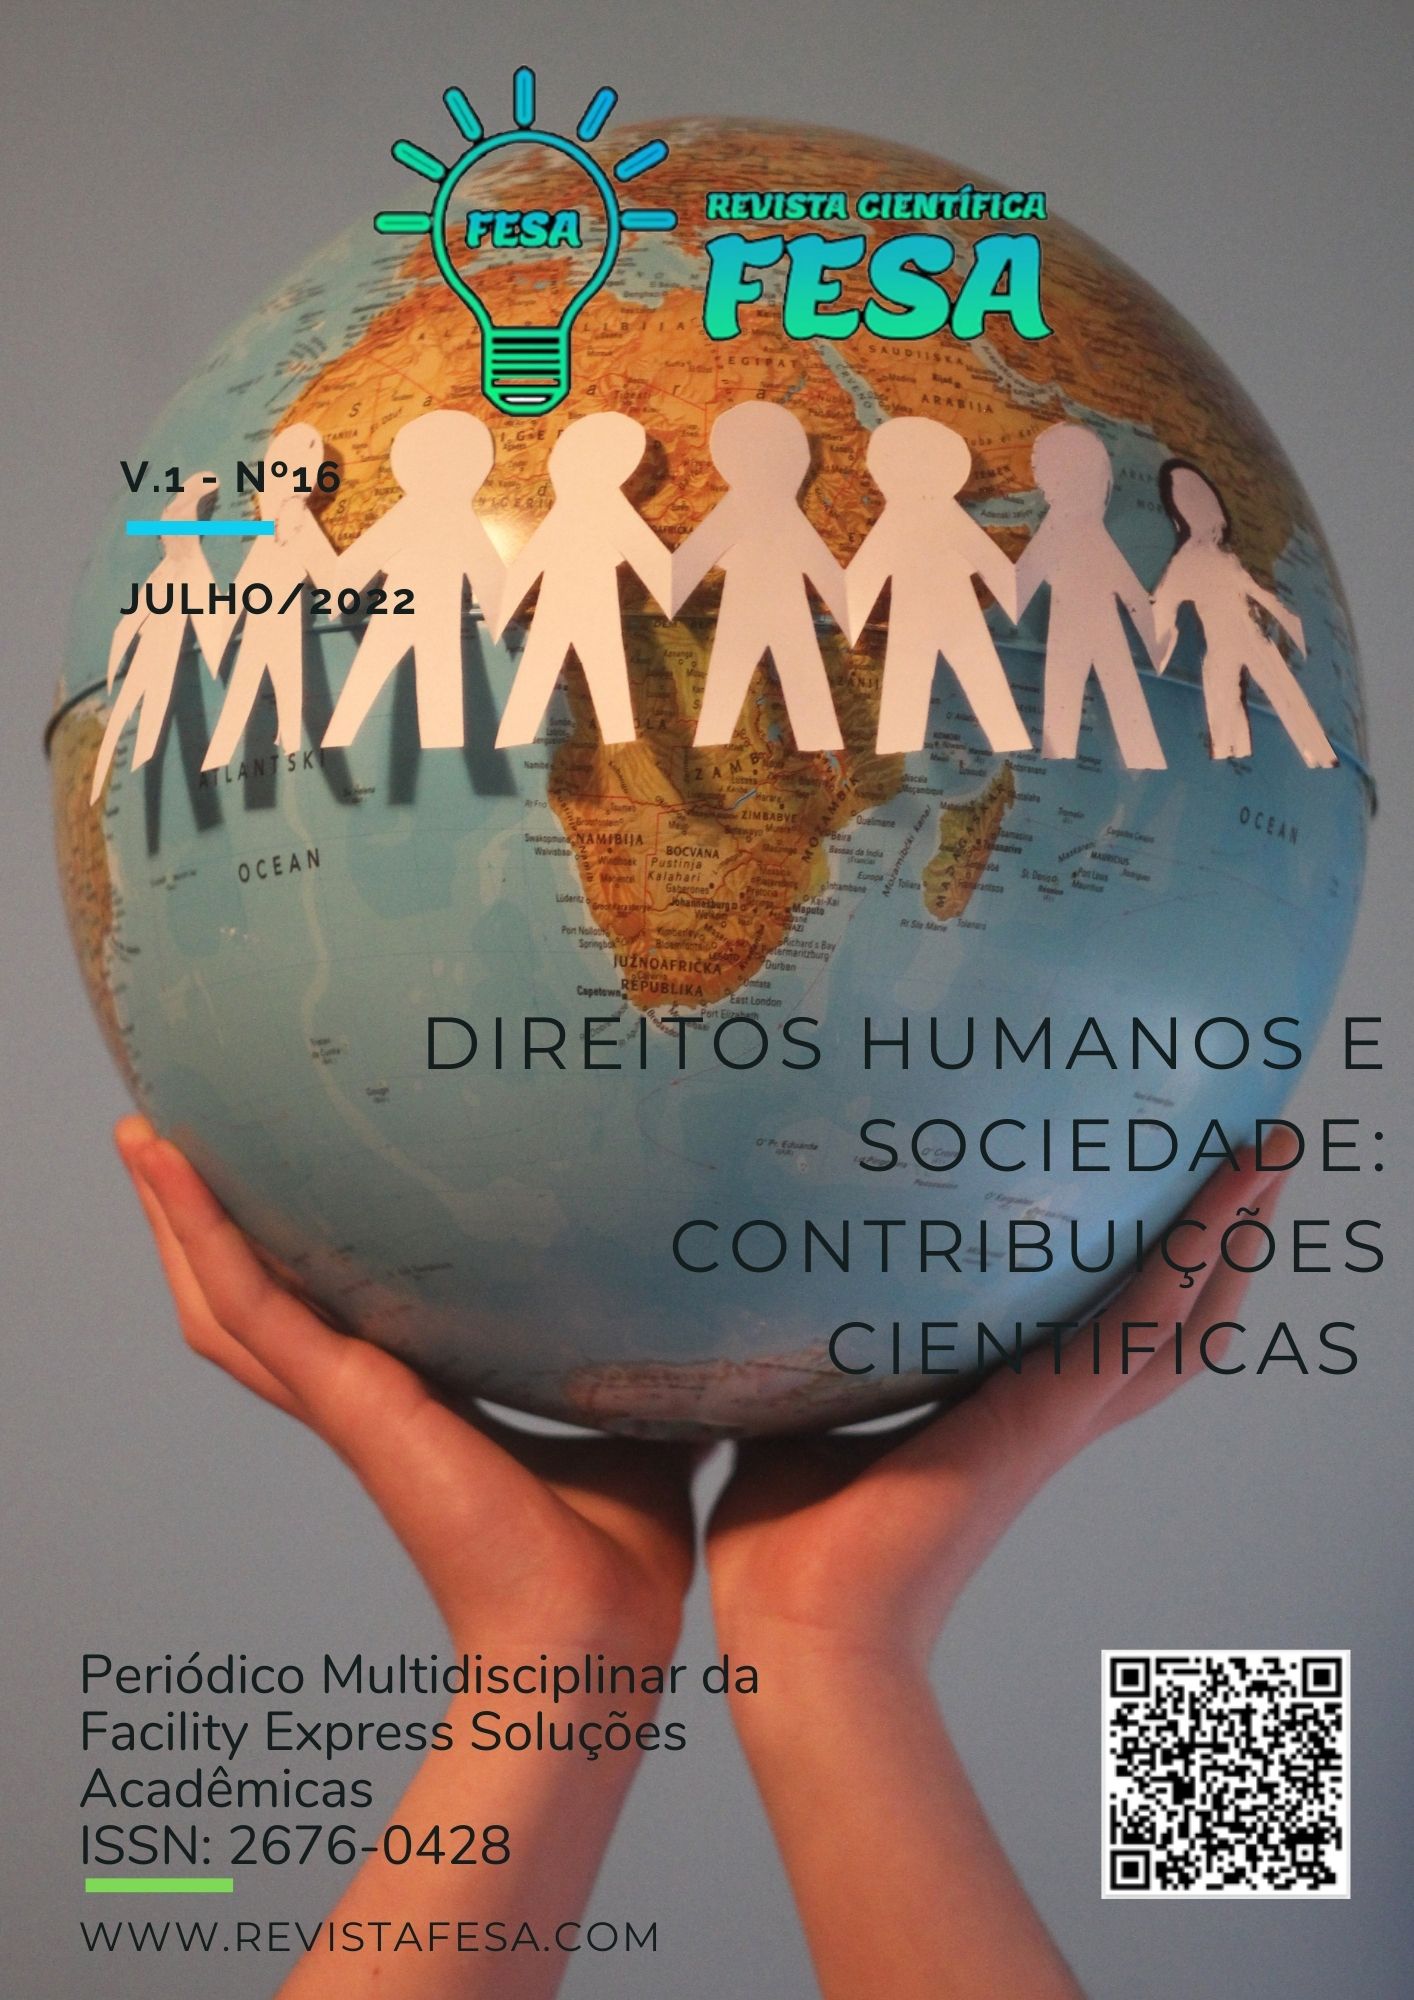 					Visualizar v. 1 n. 16 (2022): DIREITOS HUMANOS E SOCIEDADE: CONTRIBUIÇÕES CIENTÍFICAS.
				